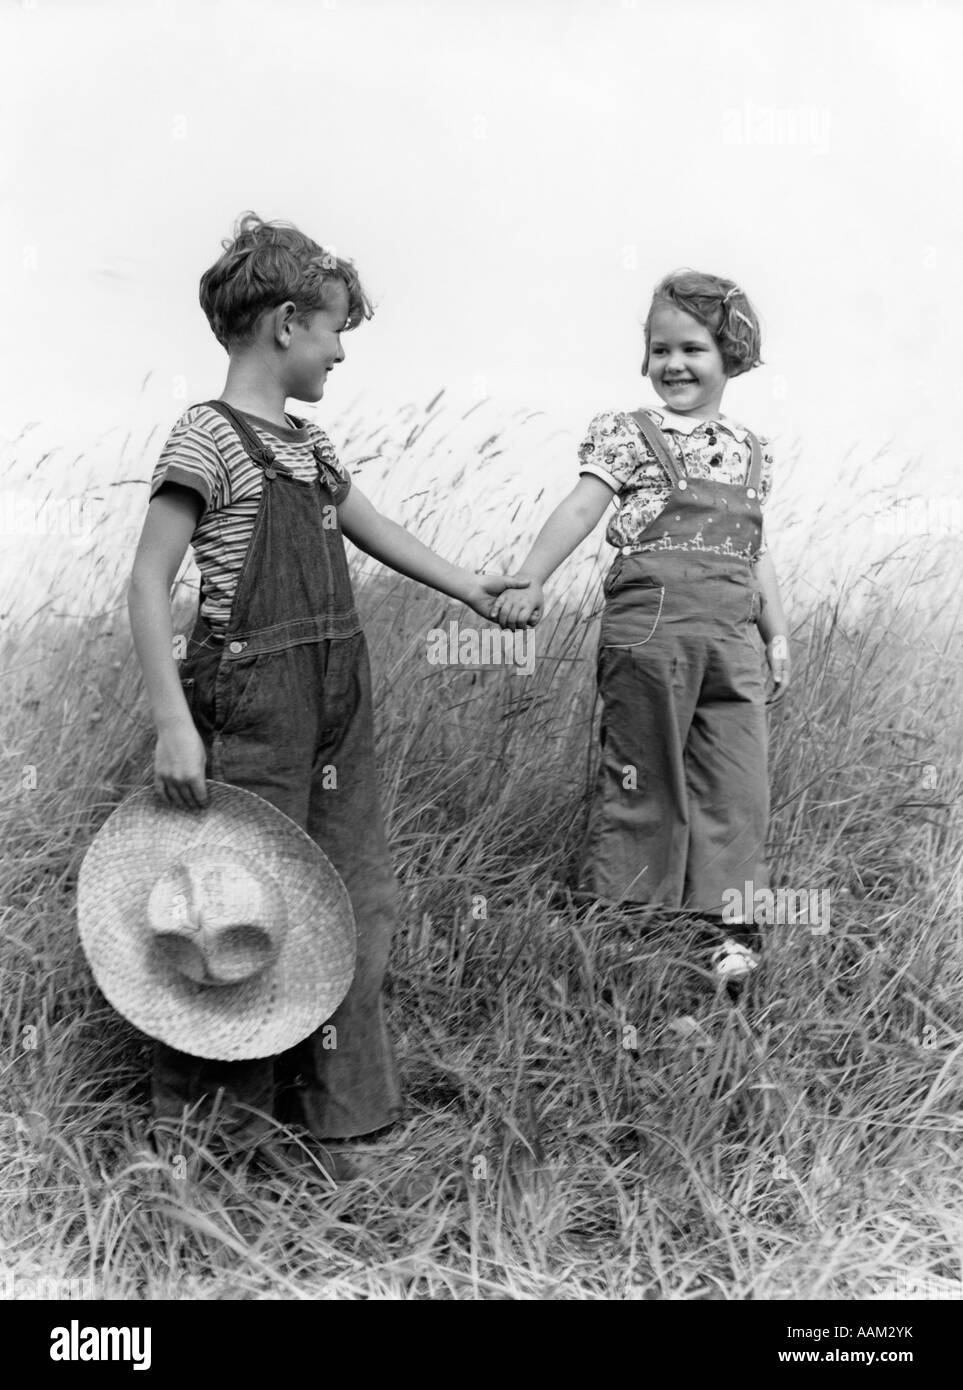 Années 1930 Années 1940 FARM KIDS BOY GIRL WEARING BRETELLES tenant la main  descendre la colline herbeuse BOY CARRYING STRAW HAT Photo Stock - Alamy